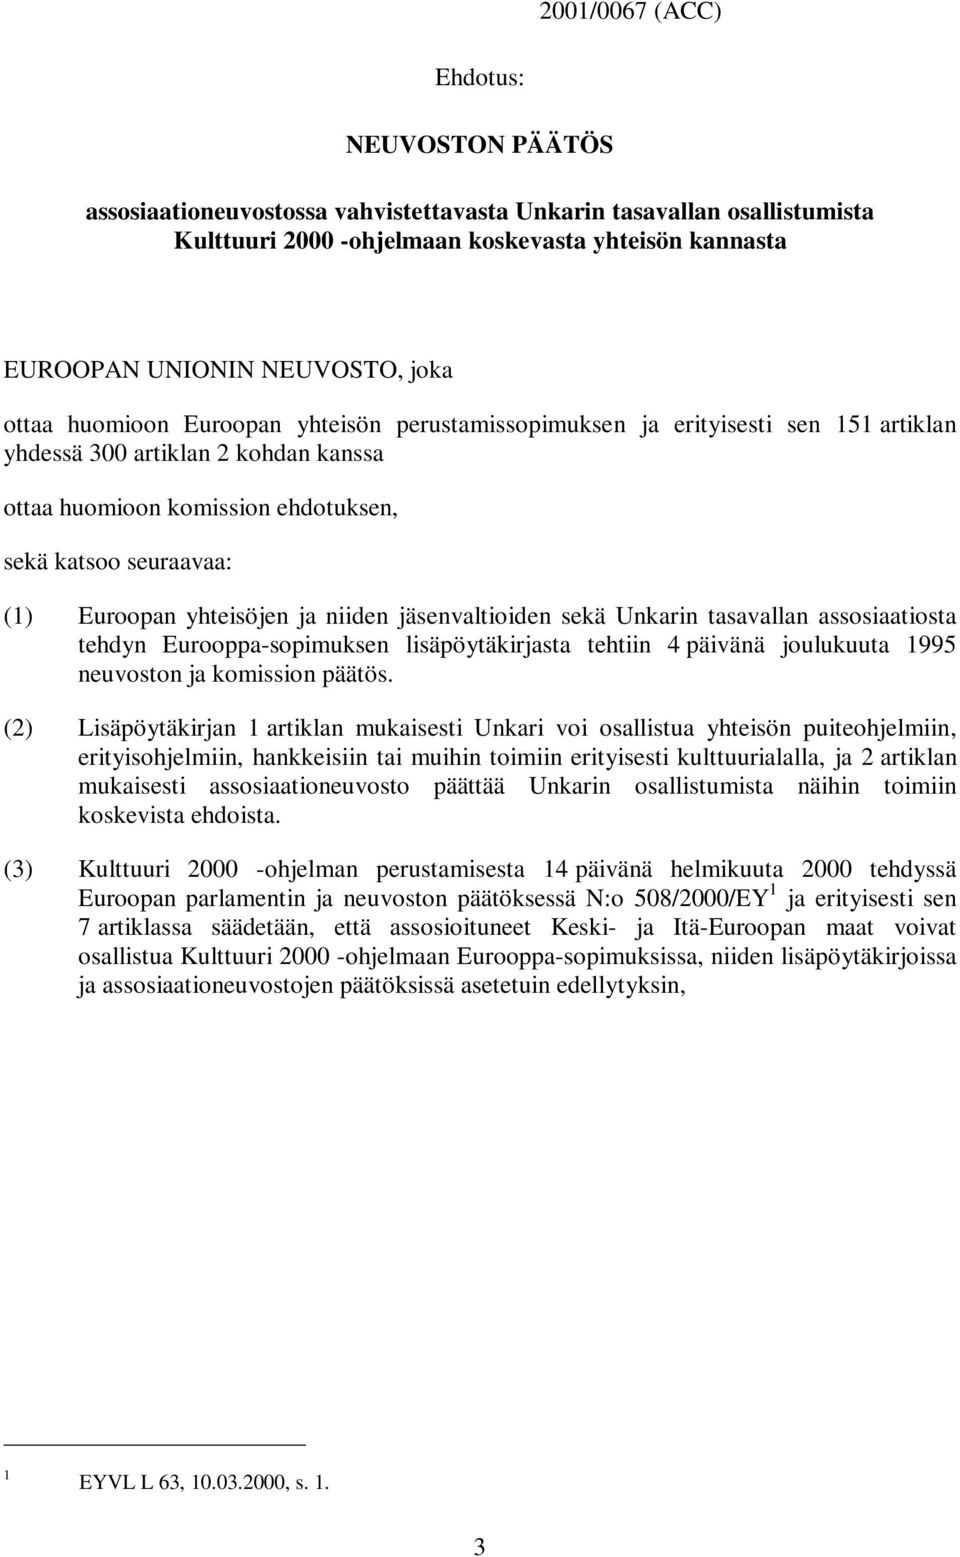 Euroopan yhteisöjen ja niiden jäsenvaltioiden sekä Unkarin tasavallan assosiaatiosta tehdyn Eurooppa-sopimuksen lisäpöytäkirjasta tehtiin 4 päivänä joulukuuta 1995 neuvoston ja komission päätös.